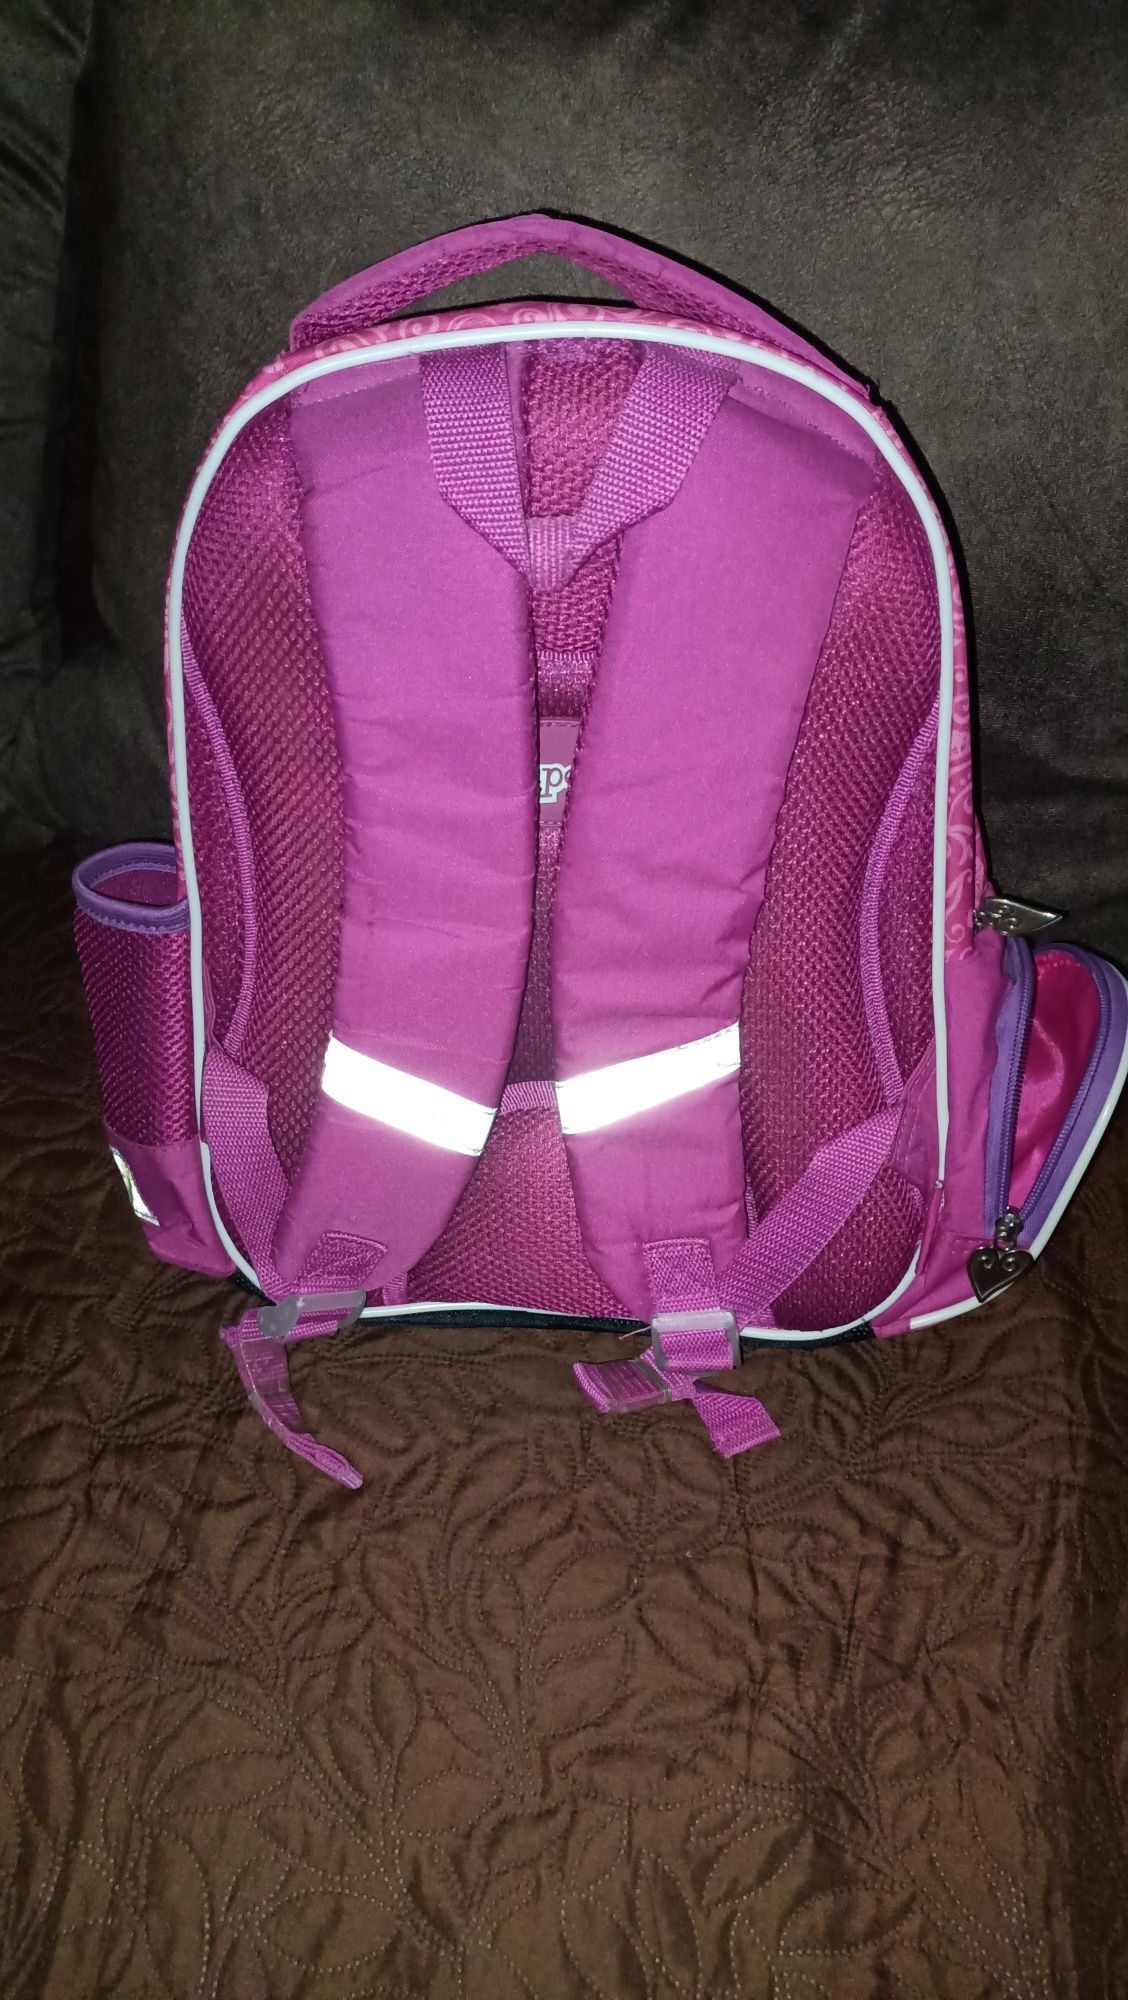 Ранец школьный рюкзак принцесса